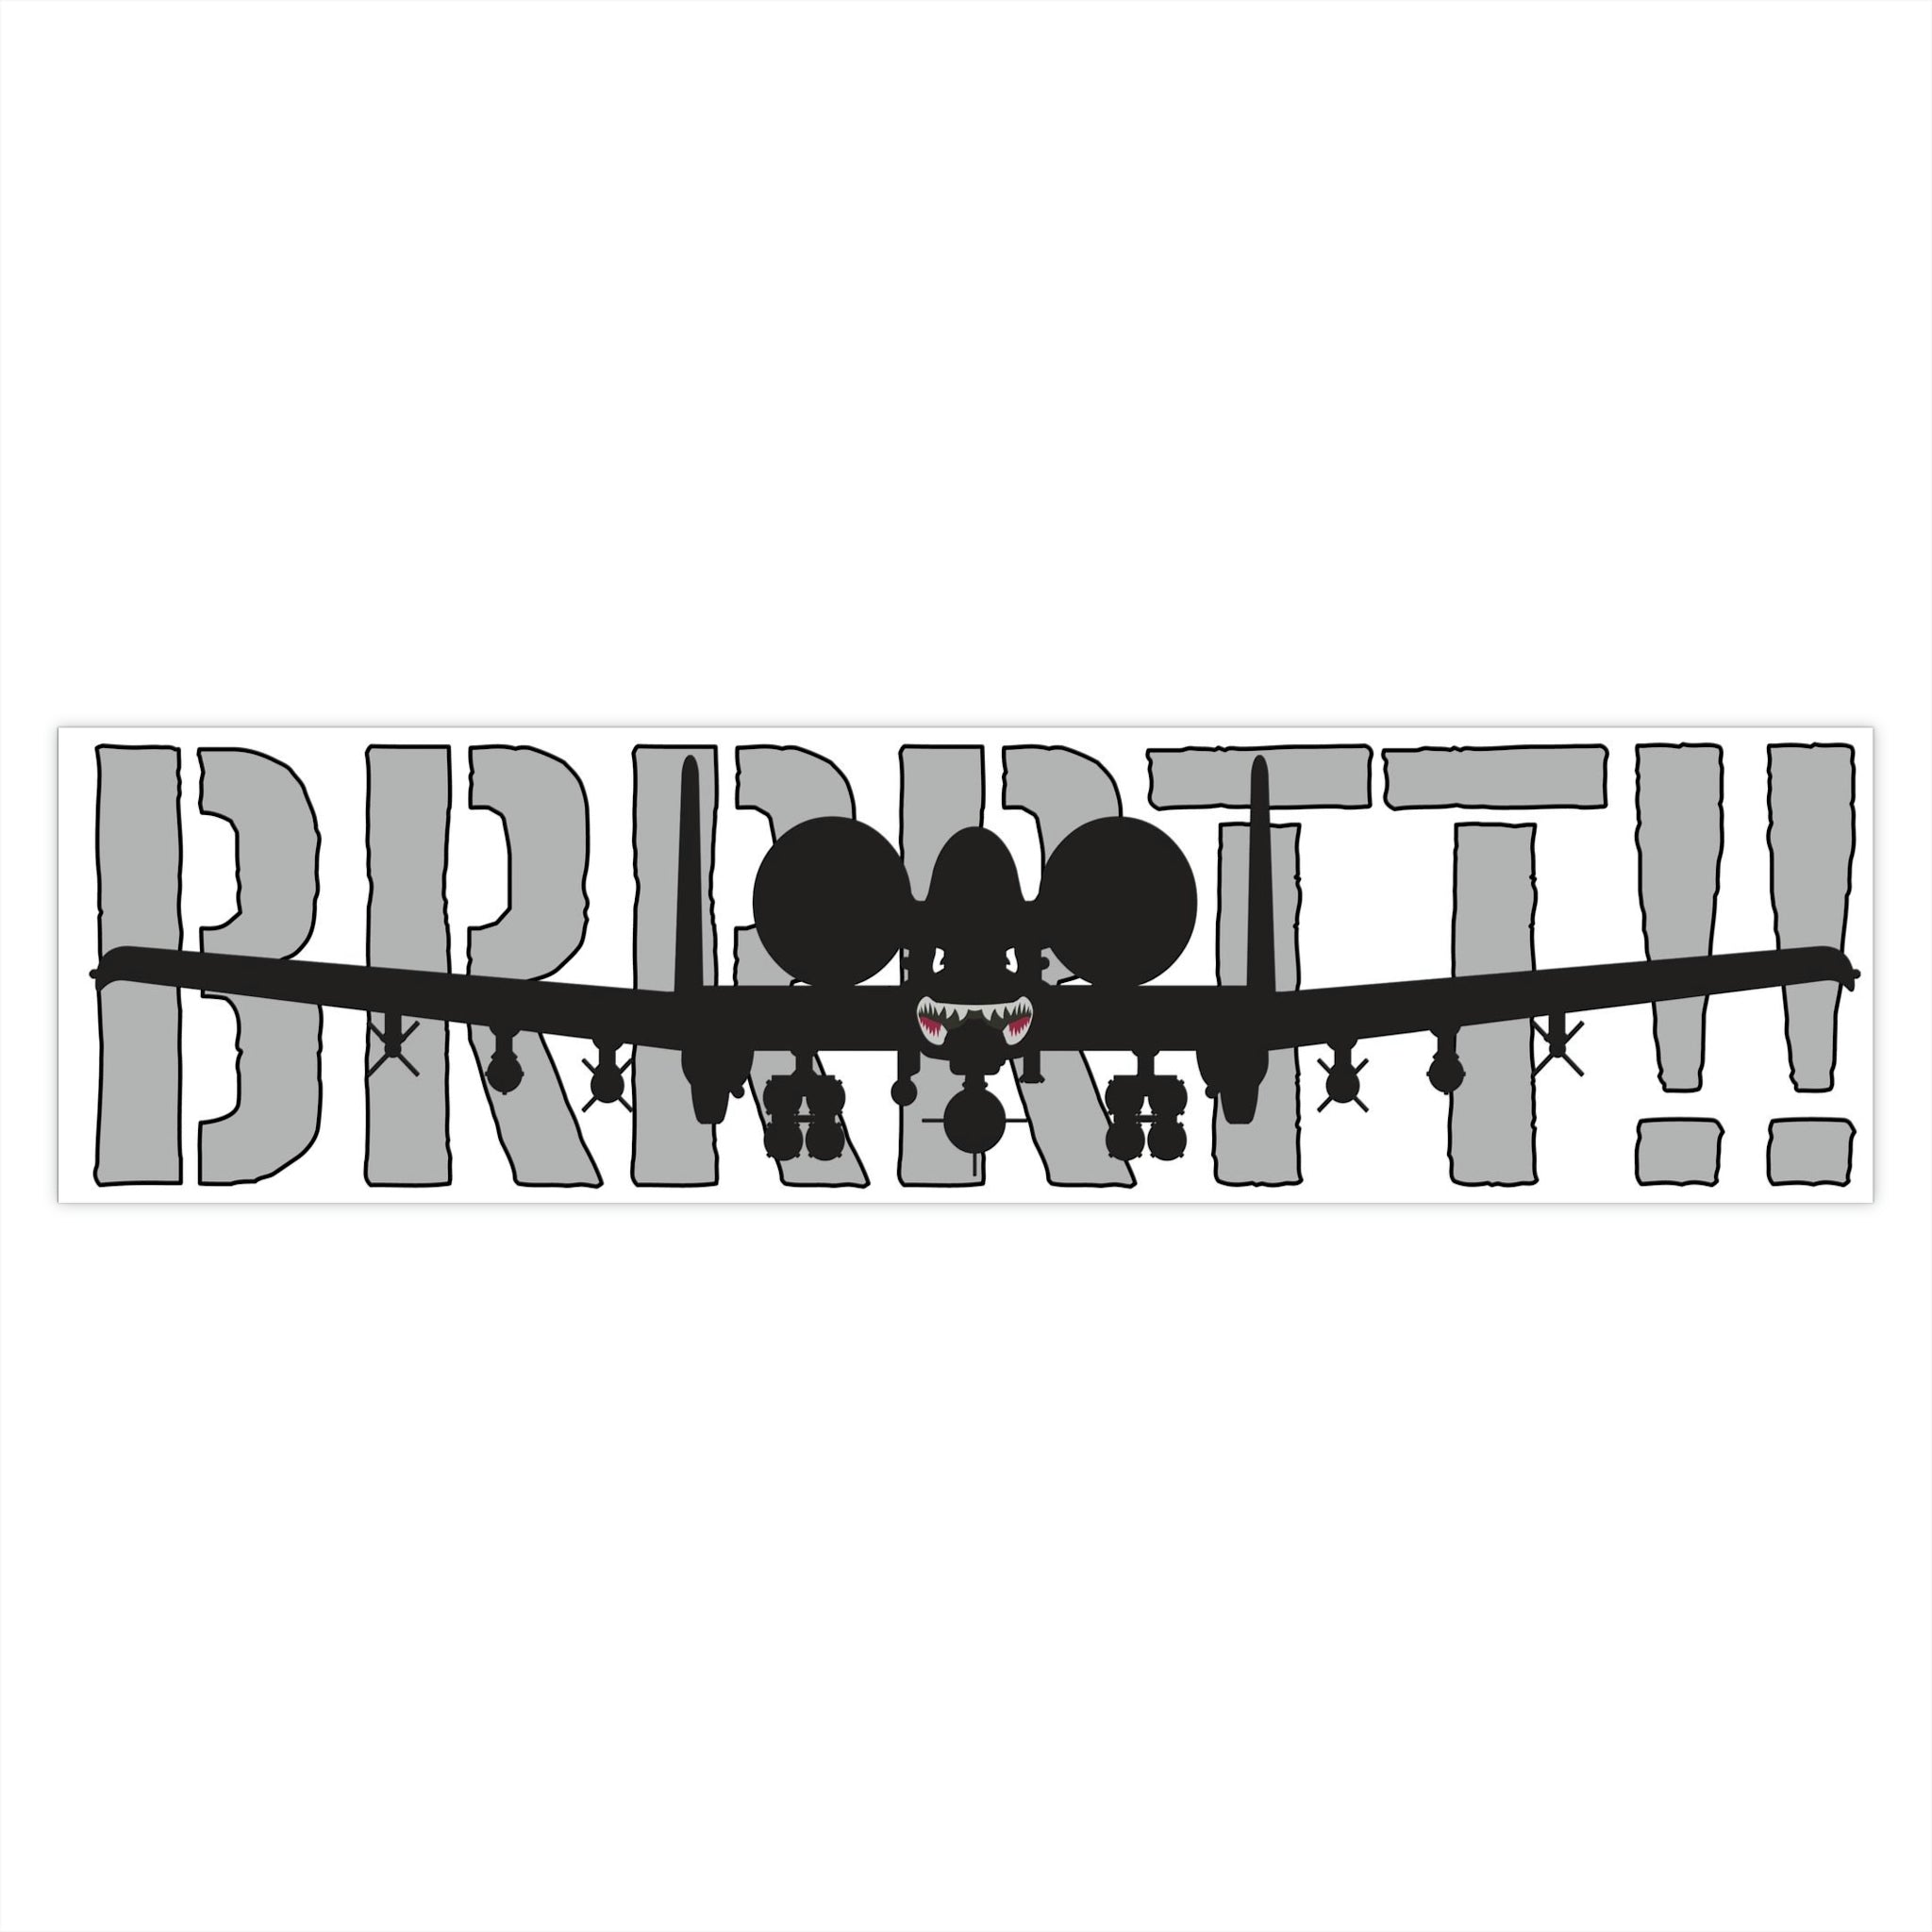 "BRRRTT!!" Bumper Stickers - I Love a Hangar